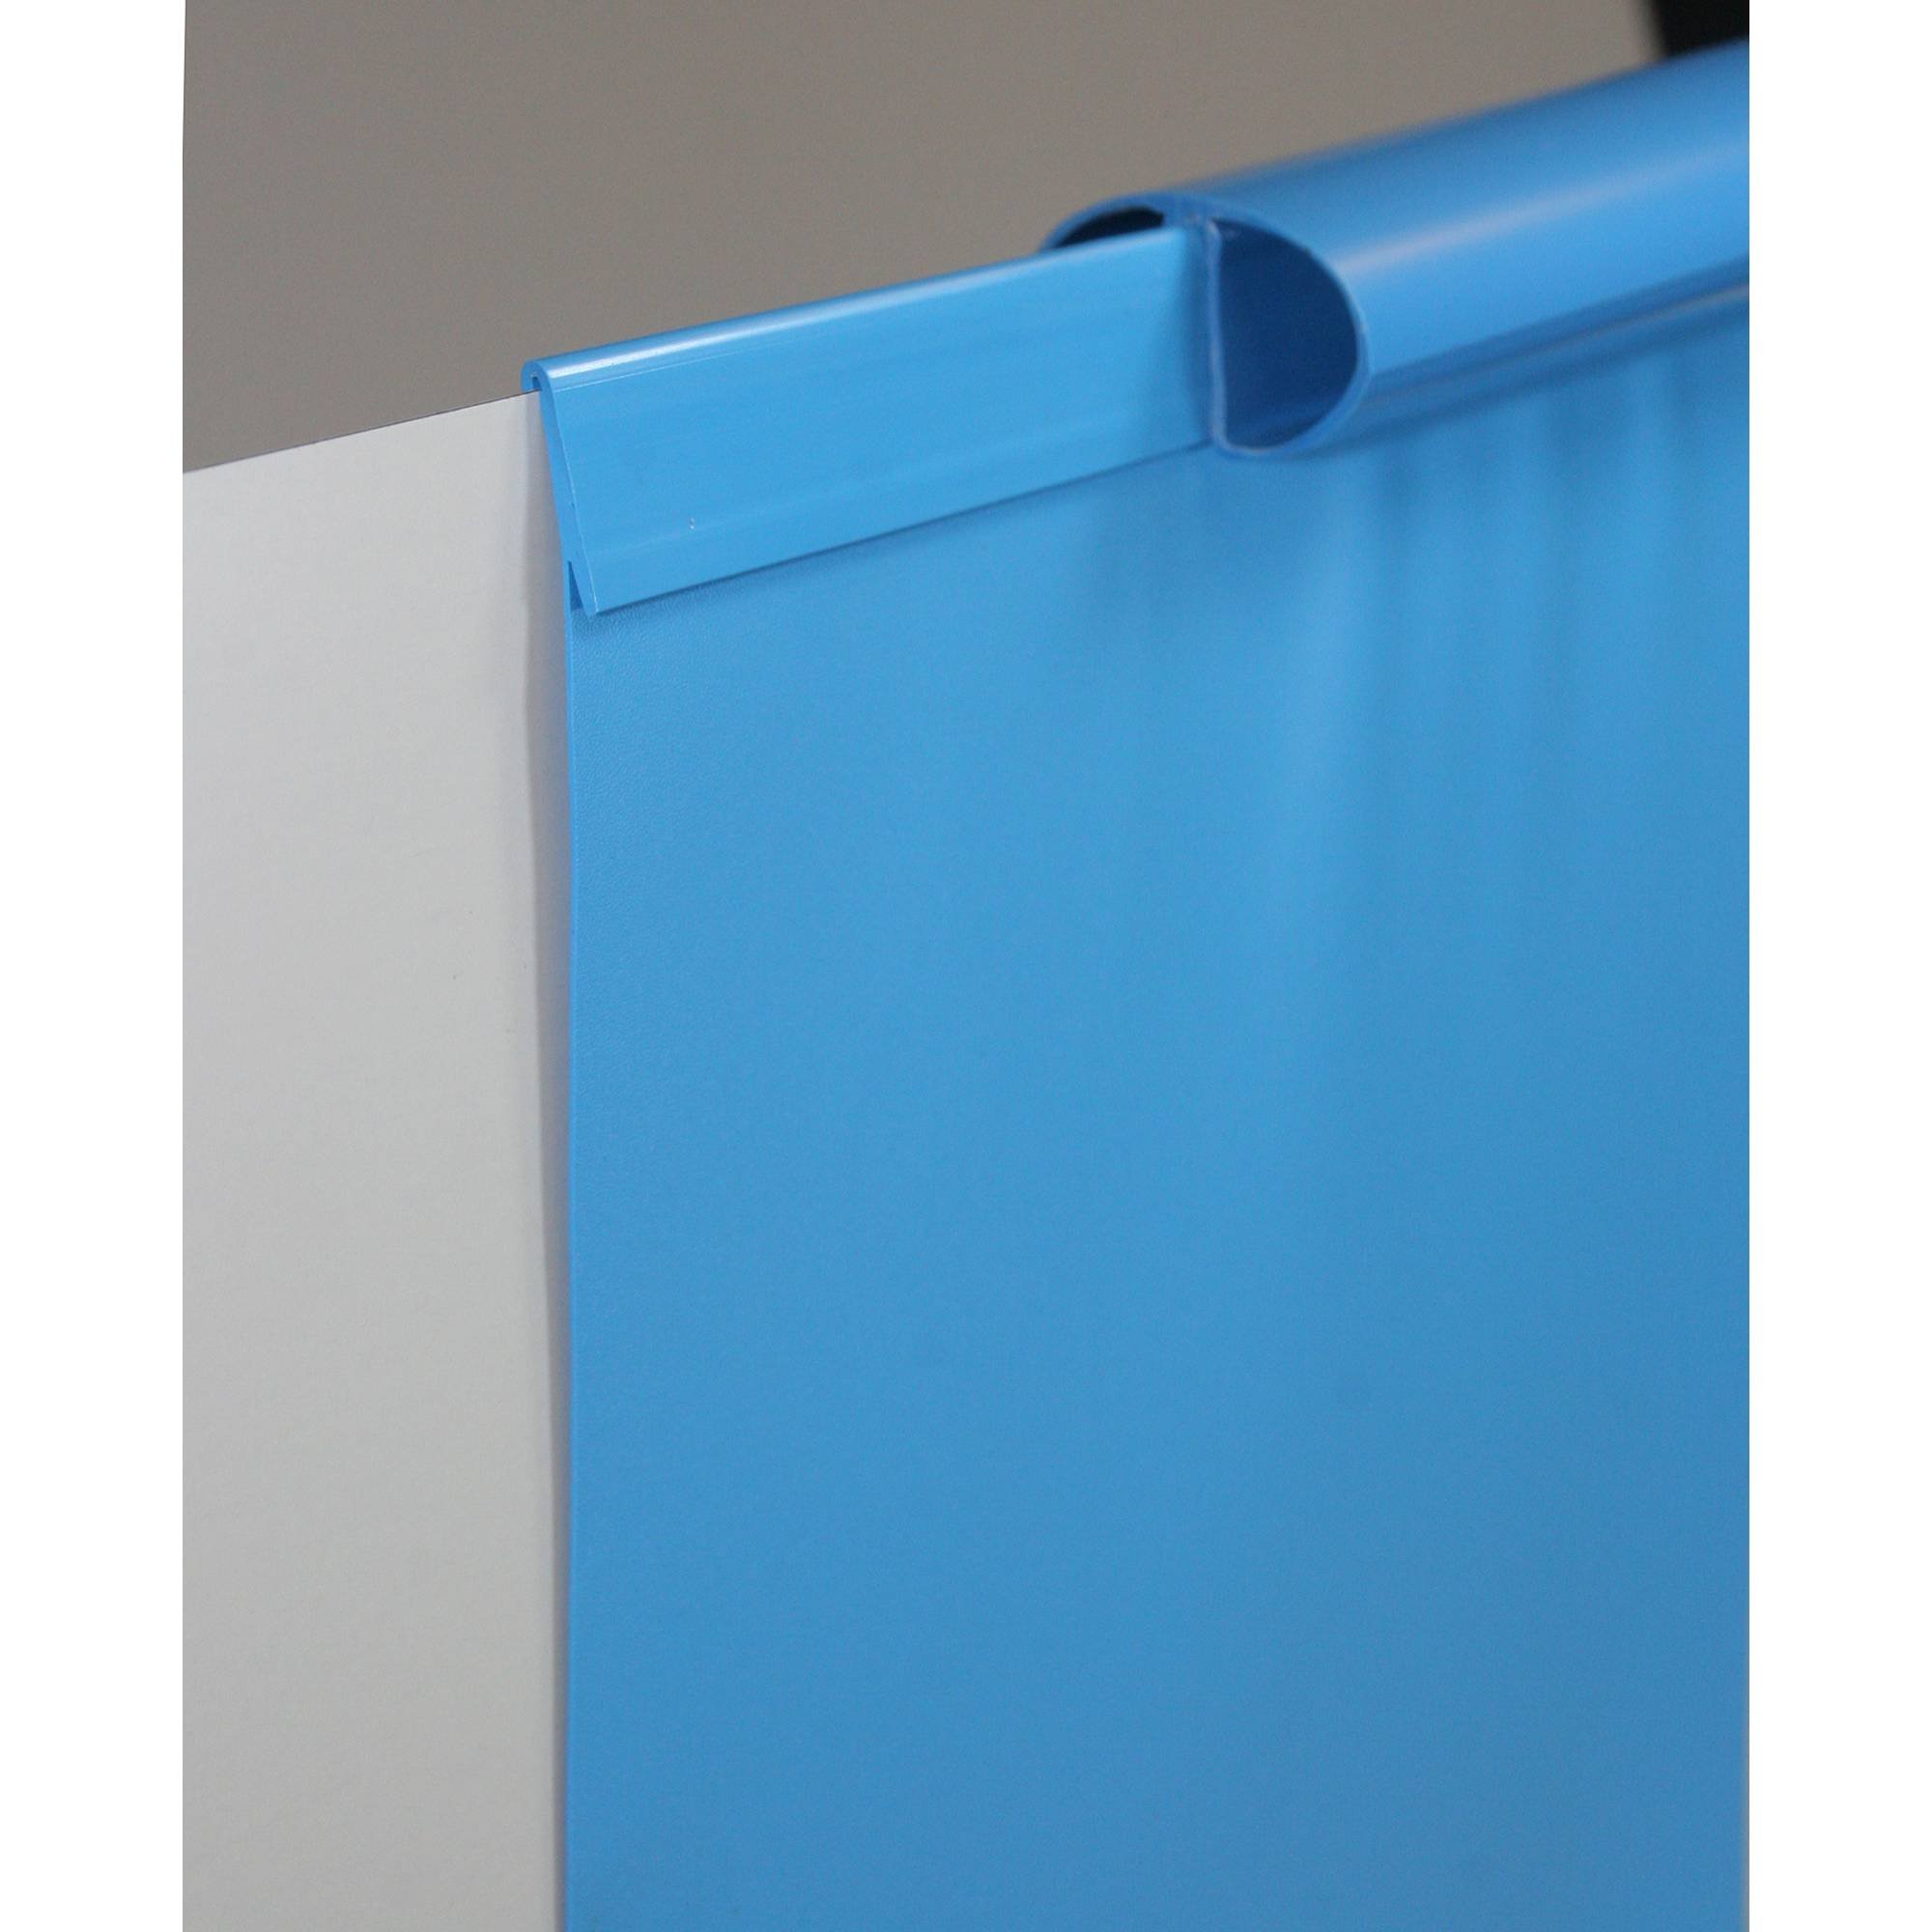 Poolfolie Ersatzfolie Ovalformbecken 1100x550x150cm - Dicke 0,6mm - Einhängebiese - blau